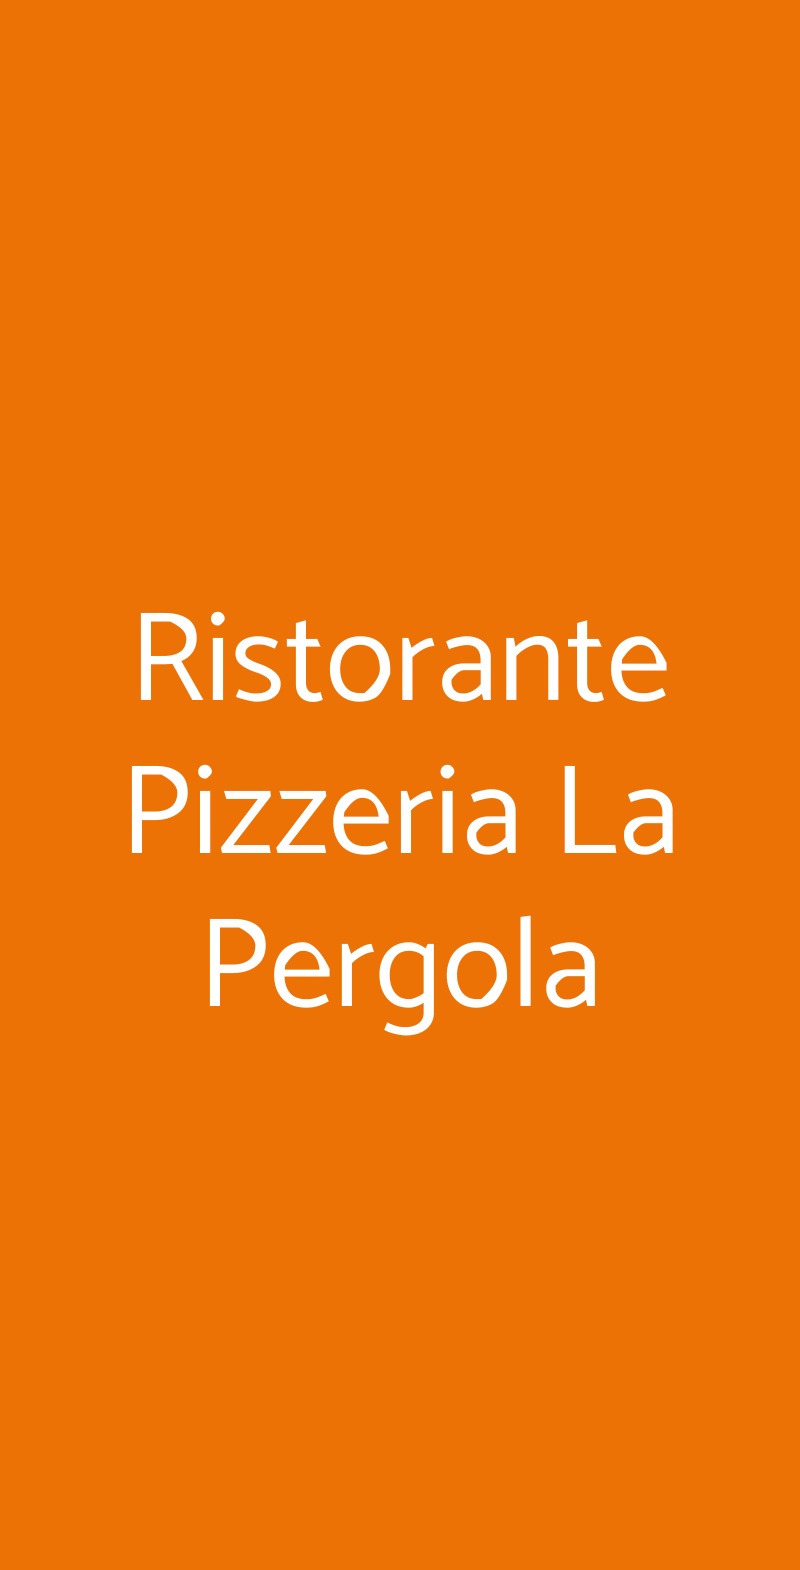 Ristorante Pizzeria La Pergola Faenza menù 1 pagina